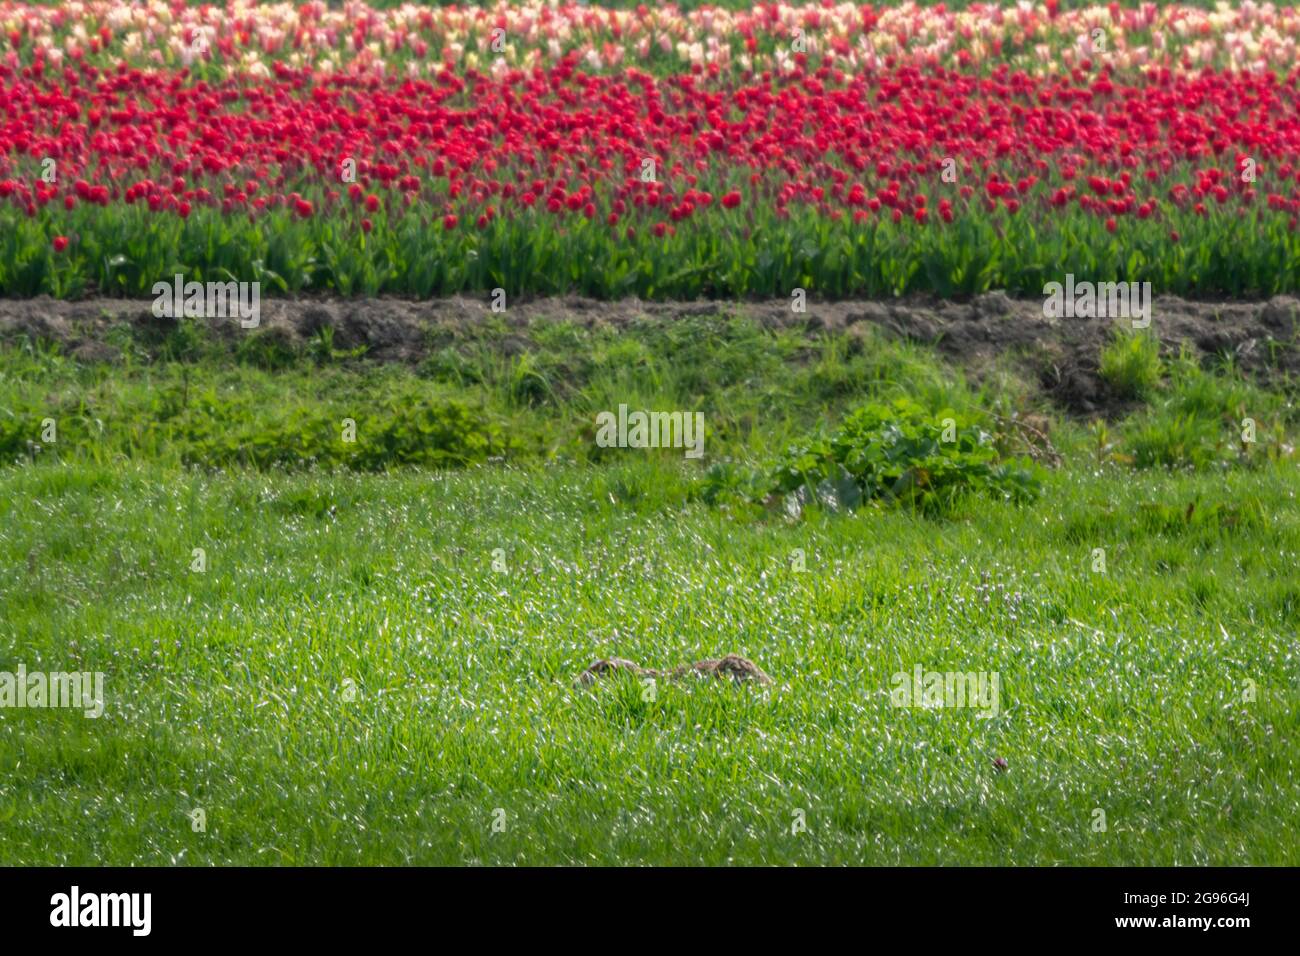 Quasi invisibile, totalmente... Lepre giace sulla sua forma in un prato vicino a un campo di tulipani fioriti rossi. Scharwoude, West Friesland, Nord Olanda Foto Stock